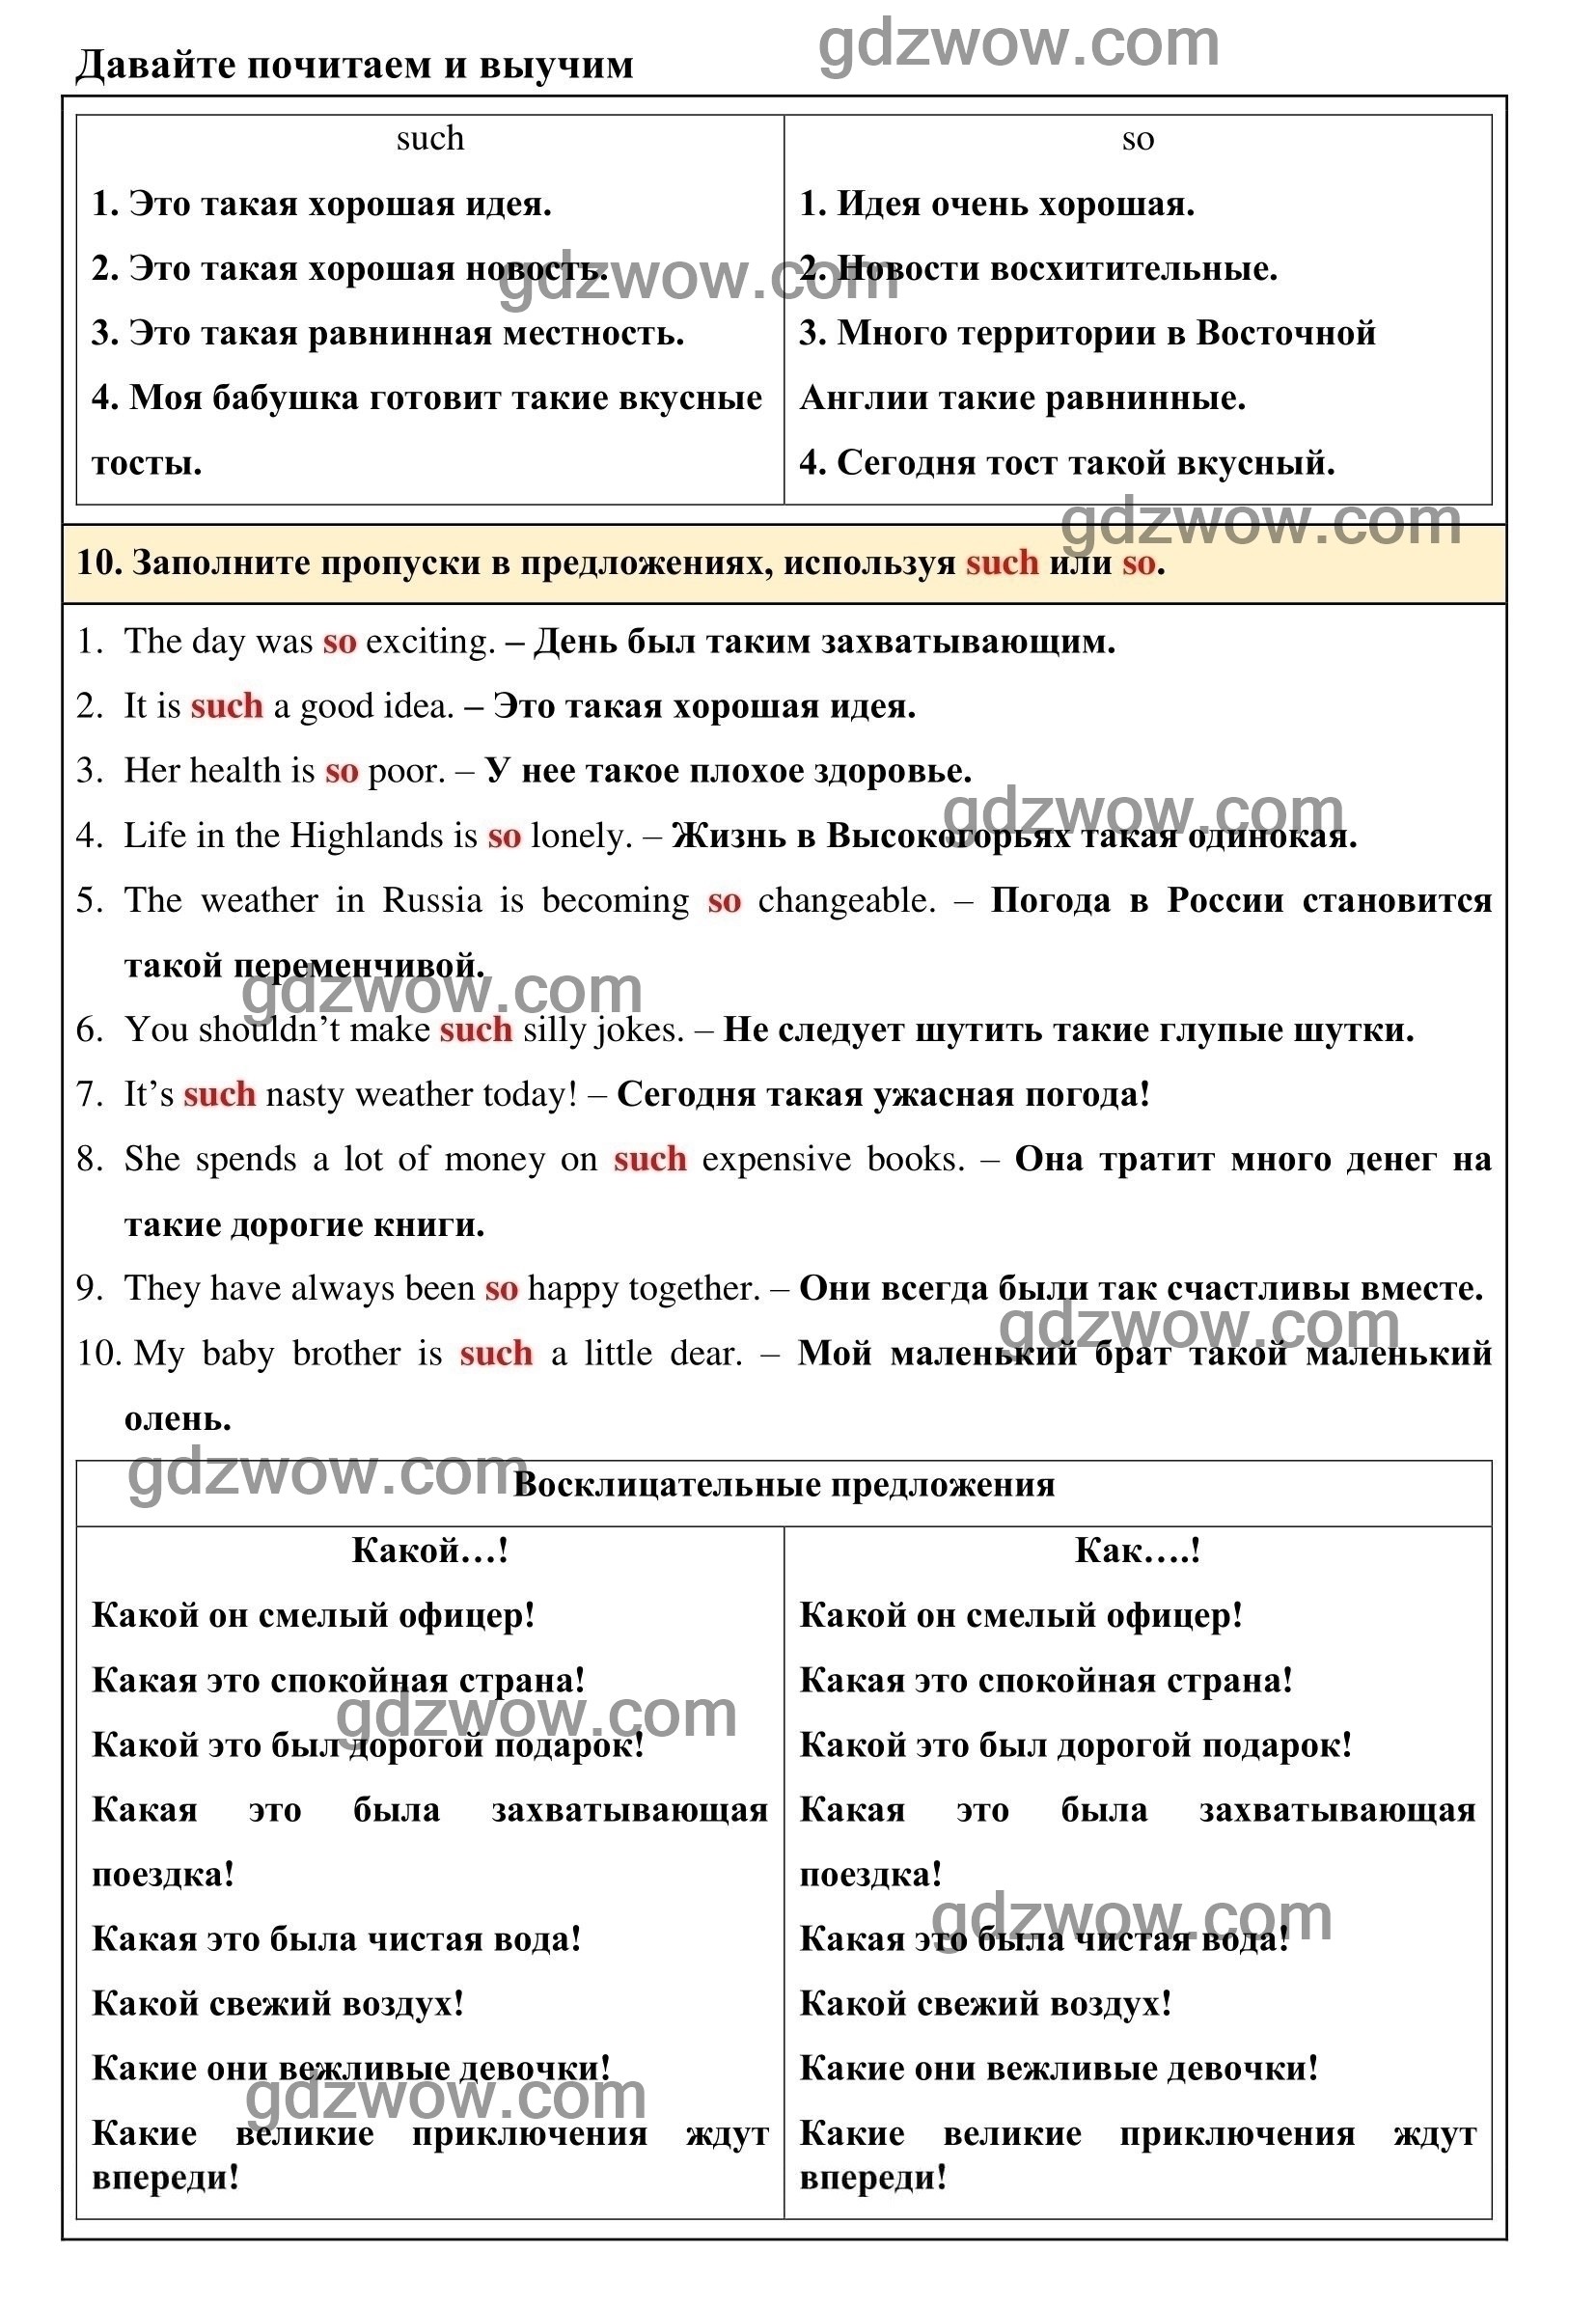 Номер 10 - ГДЗ по Английскому языку для 6 класса Учебник Афанасьева, Михеева. Unit 9. (решебник) - GDZwow